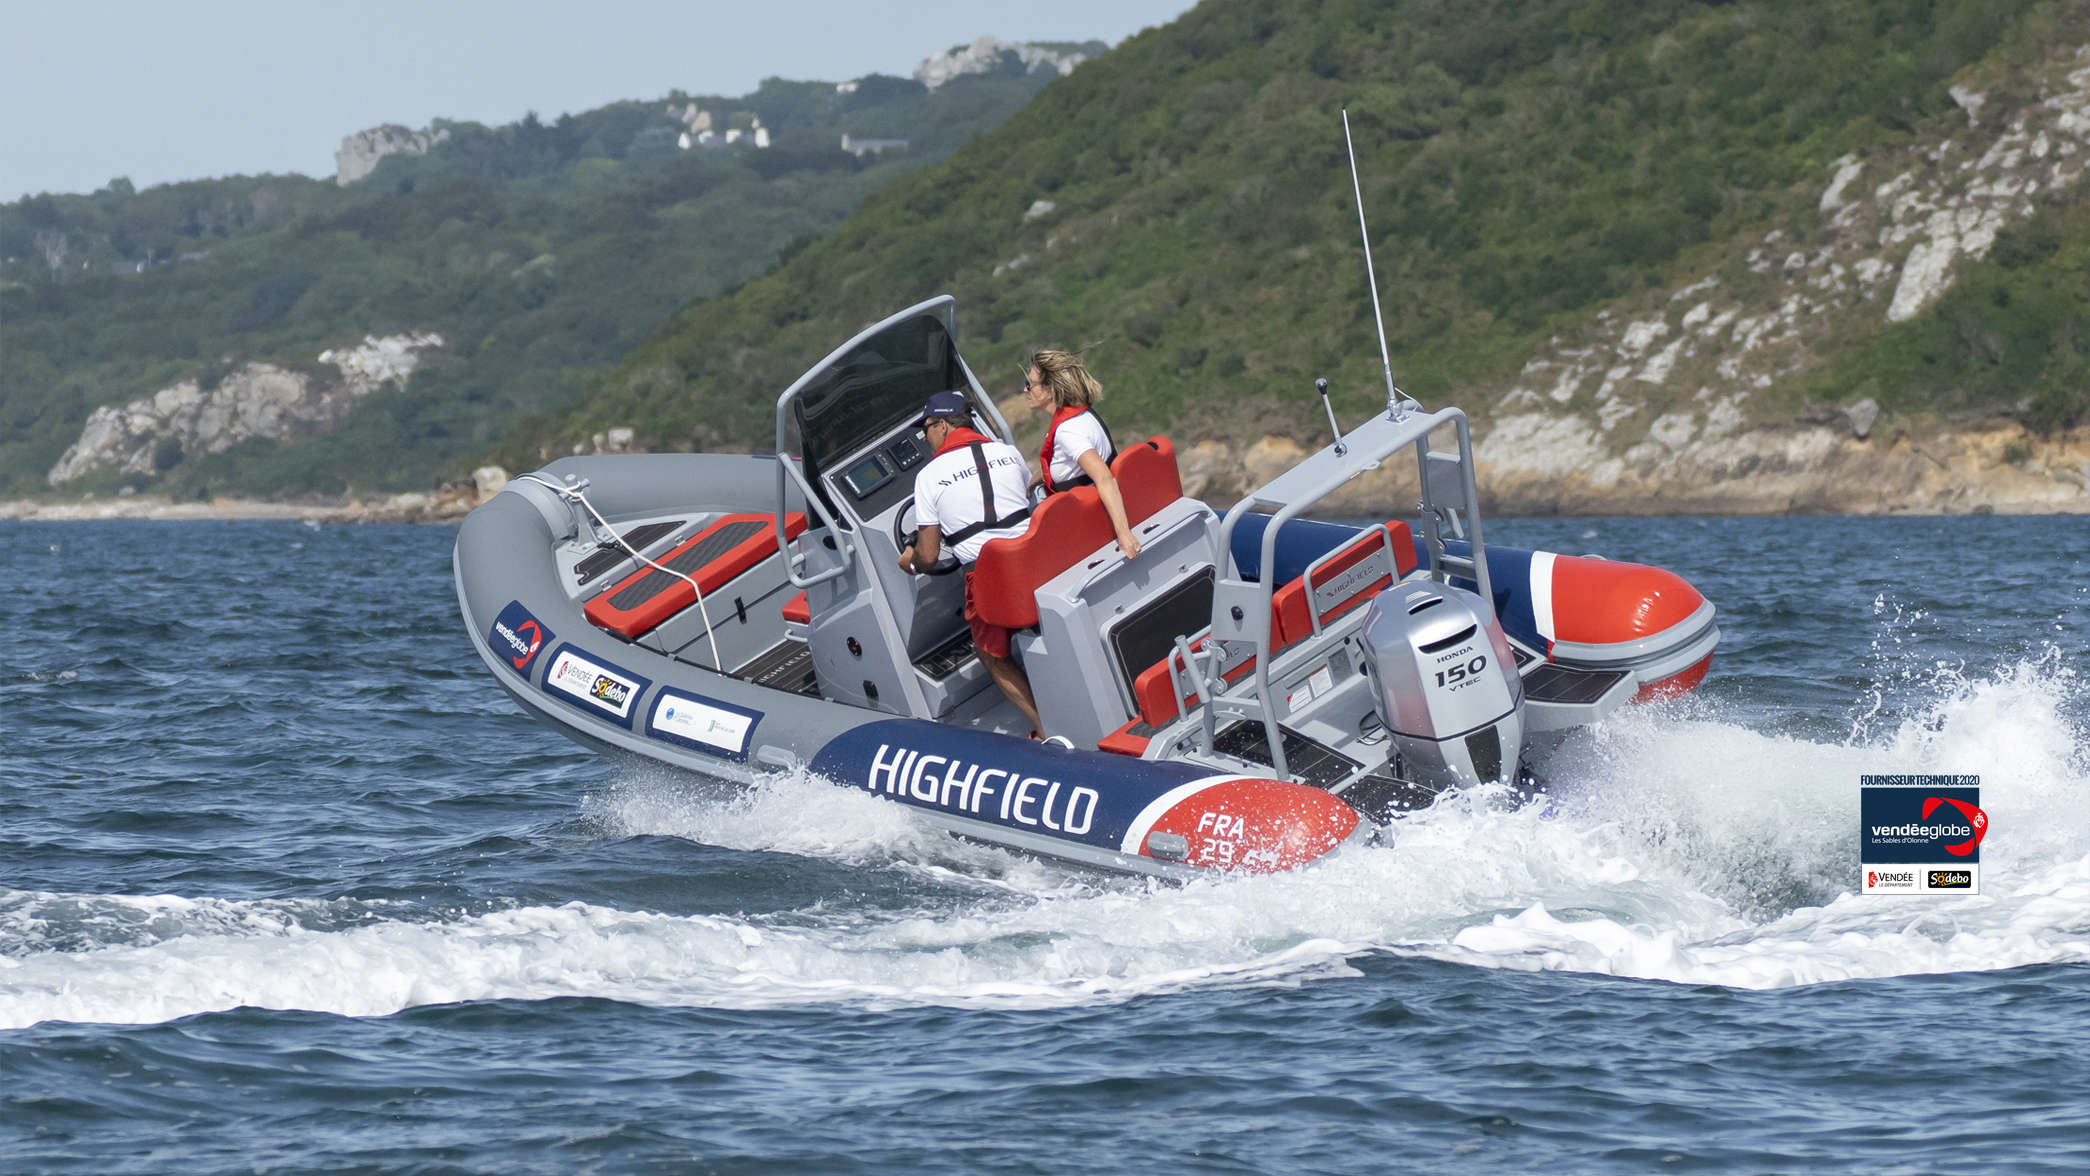 Démonstration des performances d'un bateau équipé d'un moteur Honda, idéal pour une utilisation côtière.